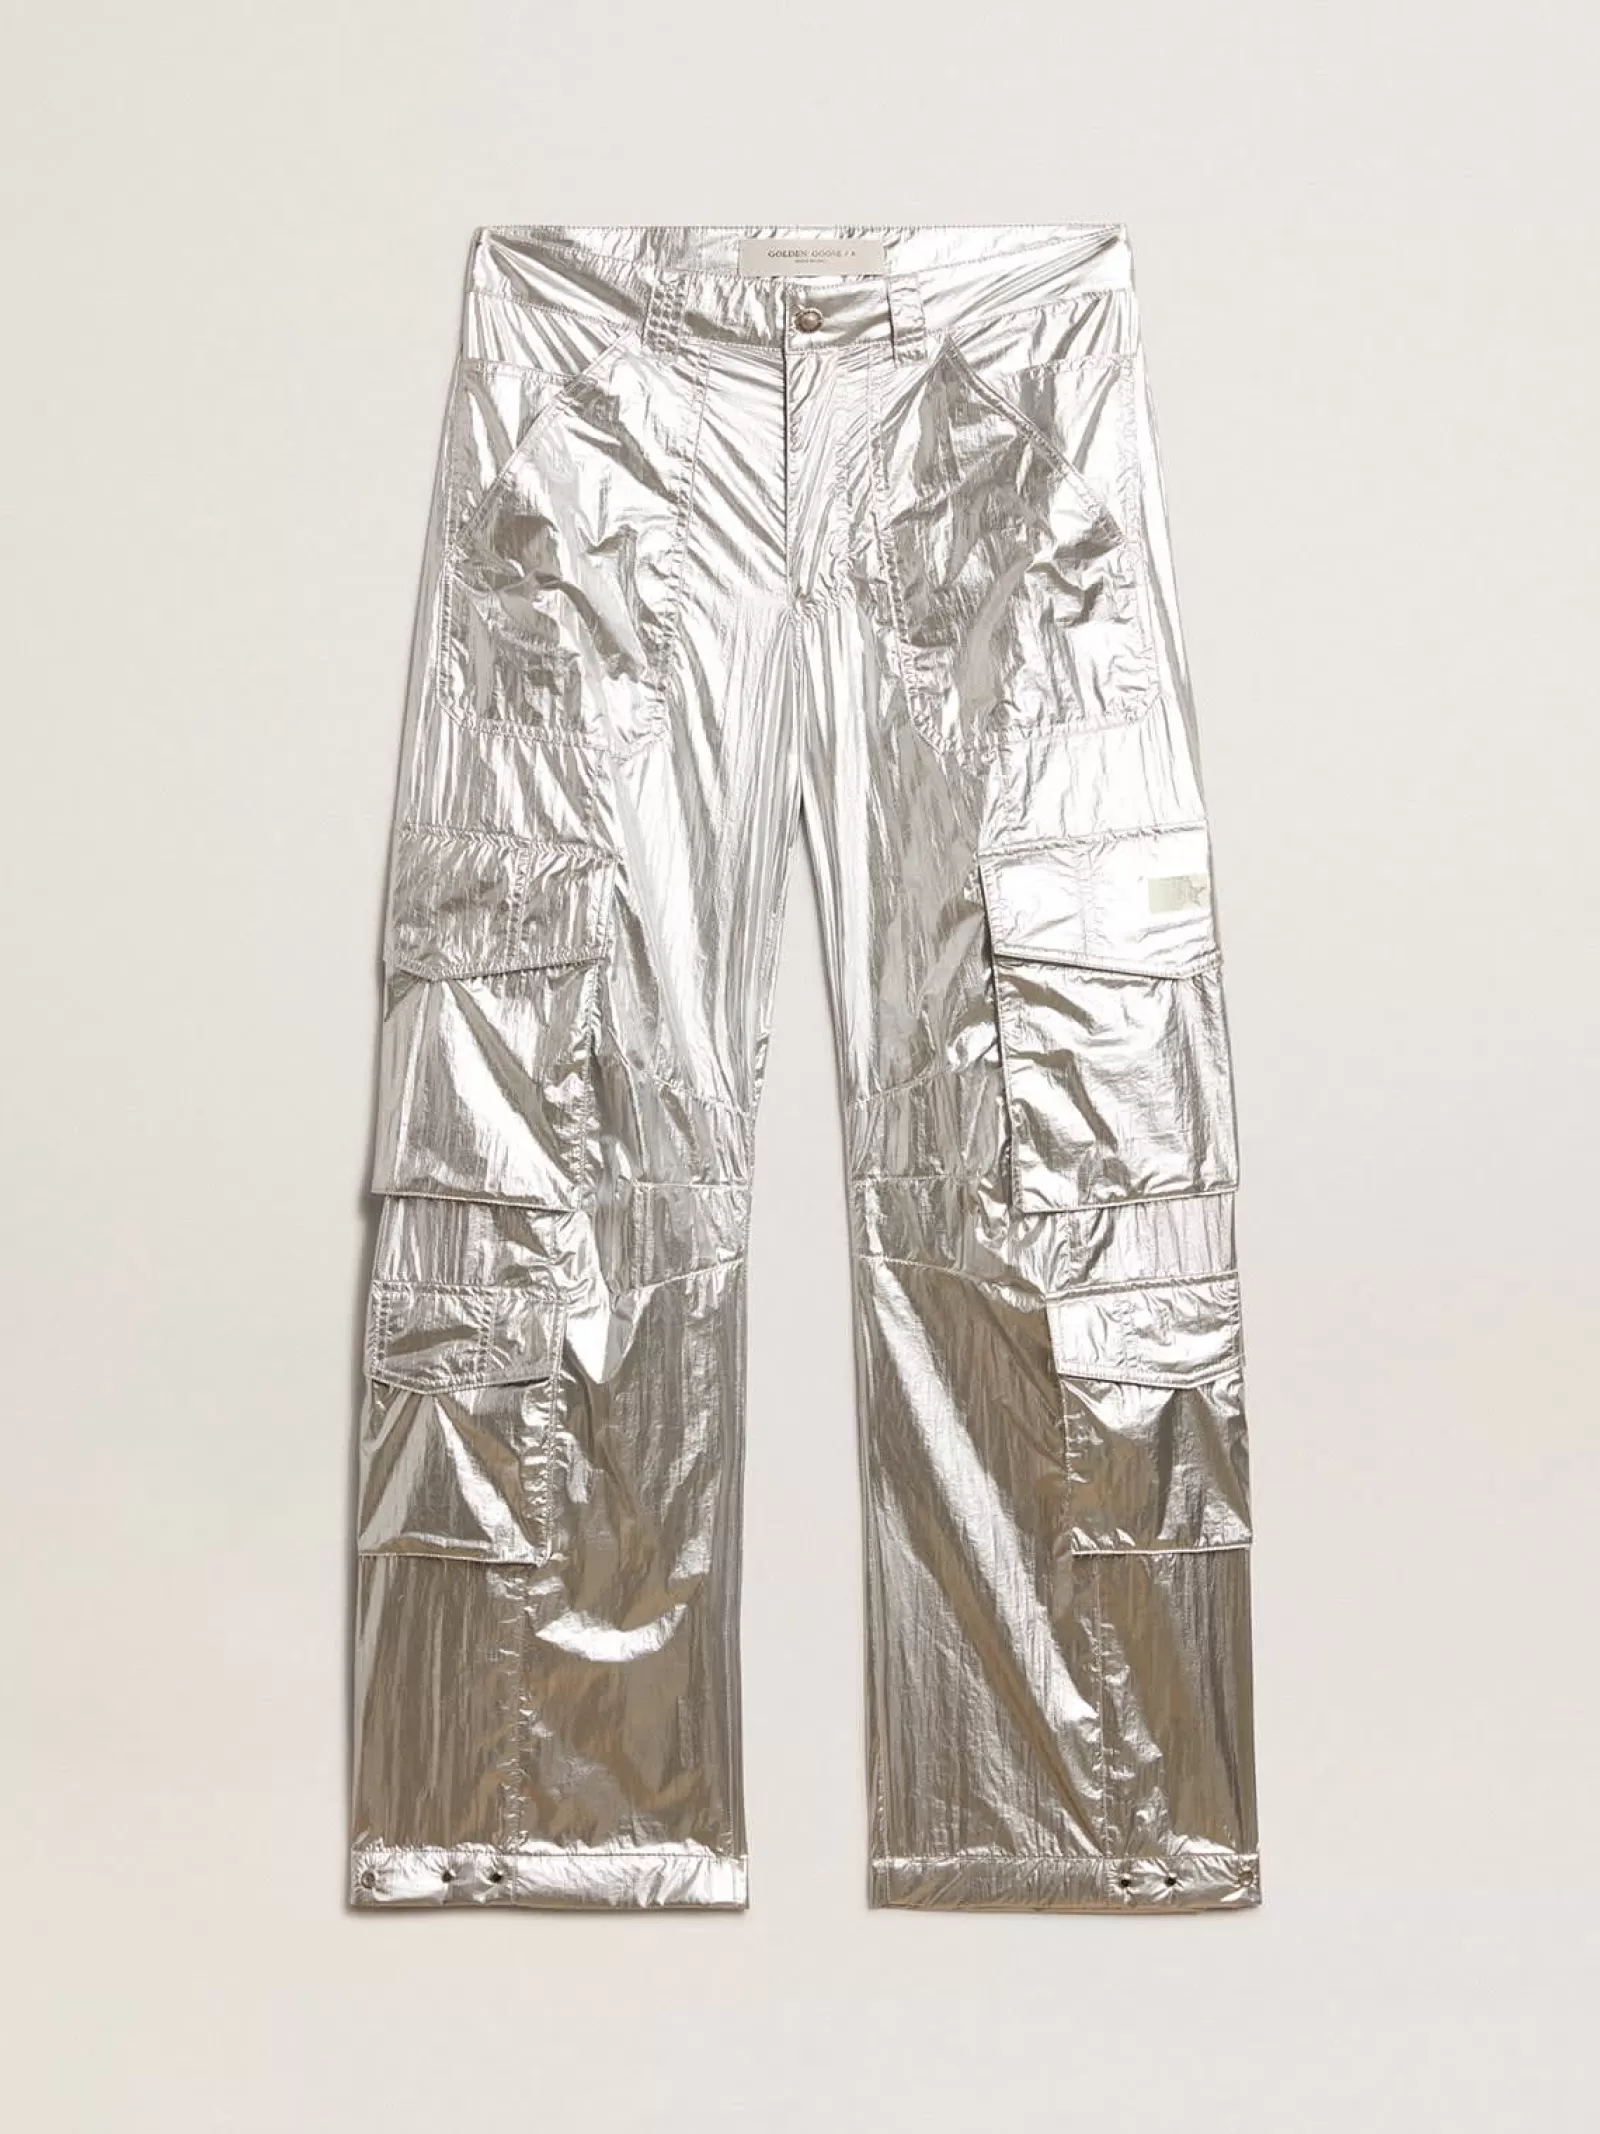 Pantalon cargo pour homme en tissu technique argenté | Golden Goose Hot